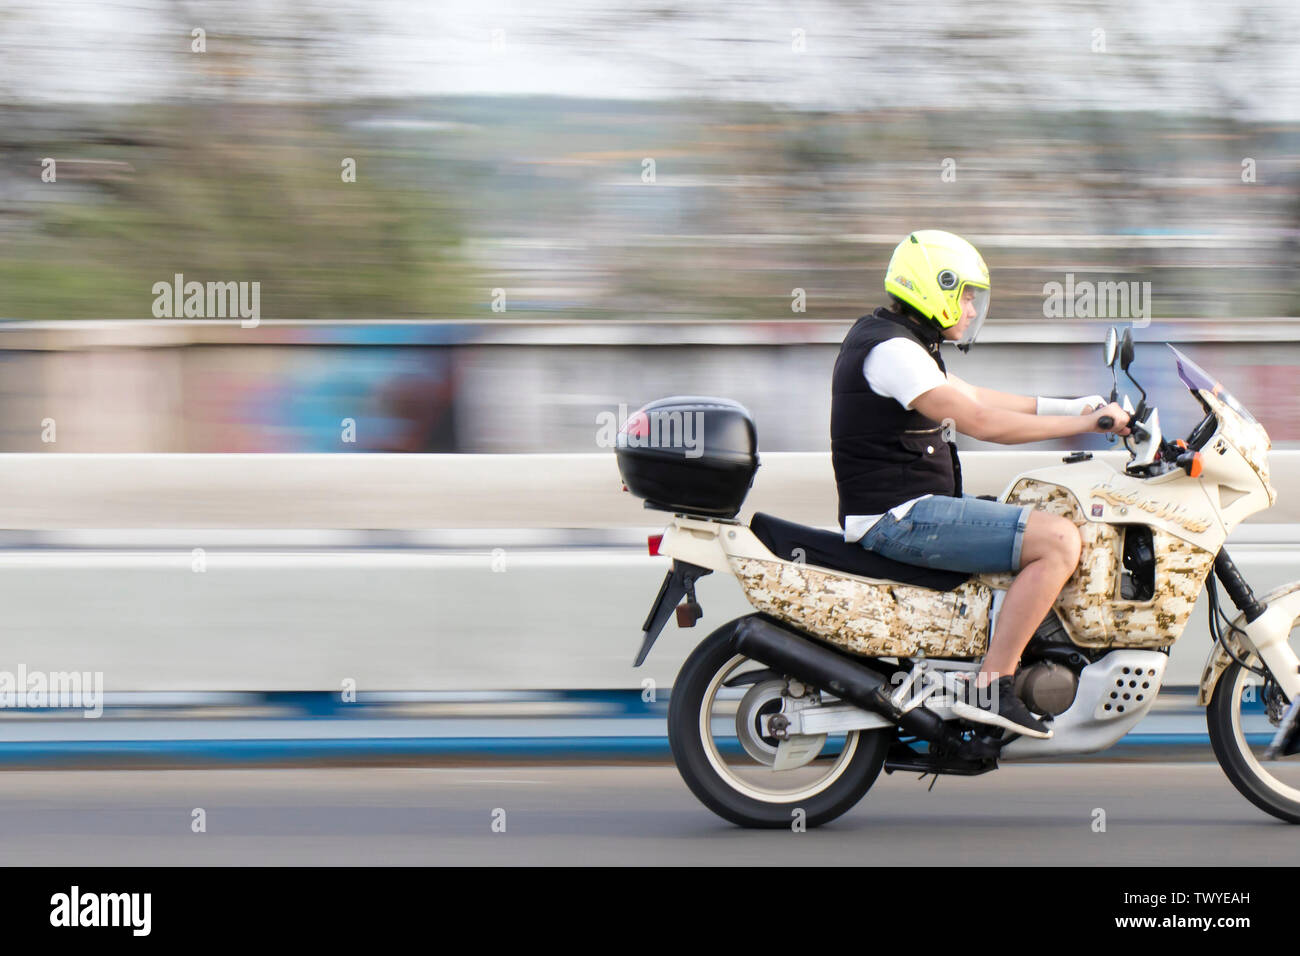 Belgrade, Serbie - Avril 26, 2019 : un jeune homme équitation moto rapide sur la ville street bridge Banque D'Images